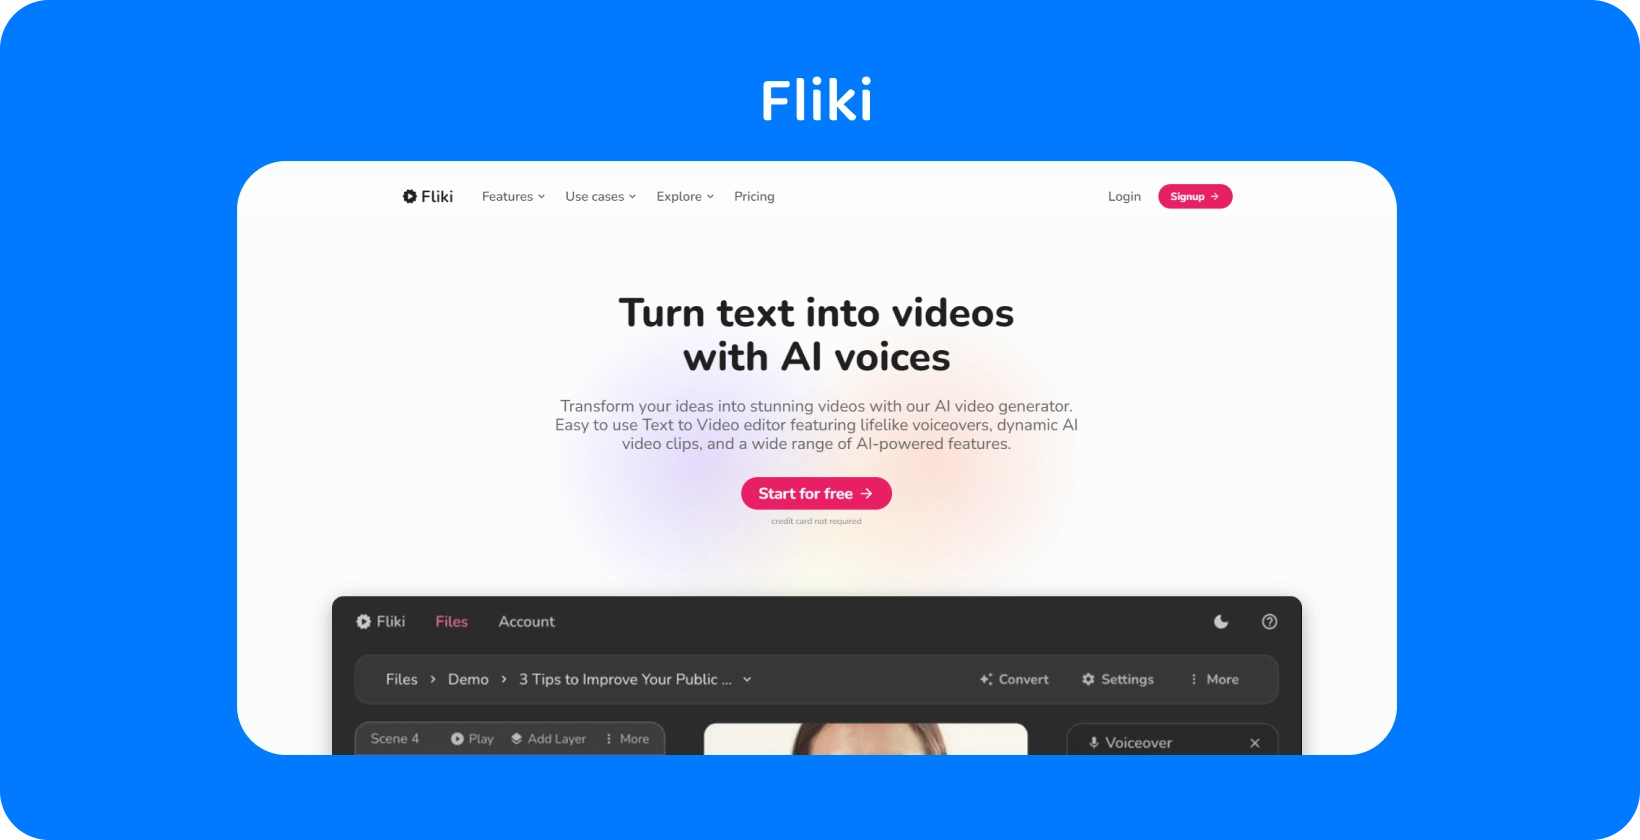 Fliki platformside viser, hvordan man omdanner tekst til videoer med AI stemmer, hvilket giver en tekst-til-video-redigeringsoplevelse.